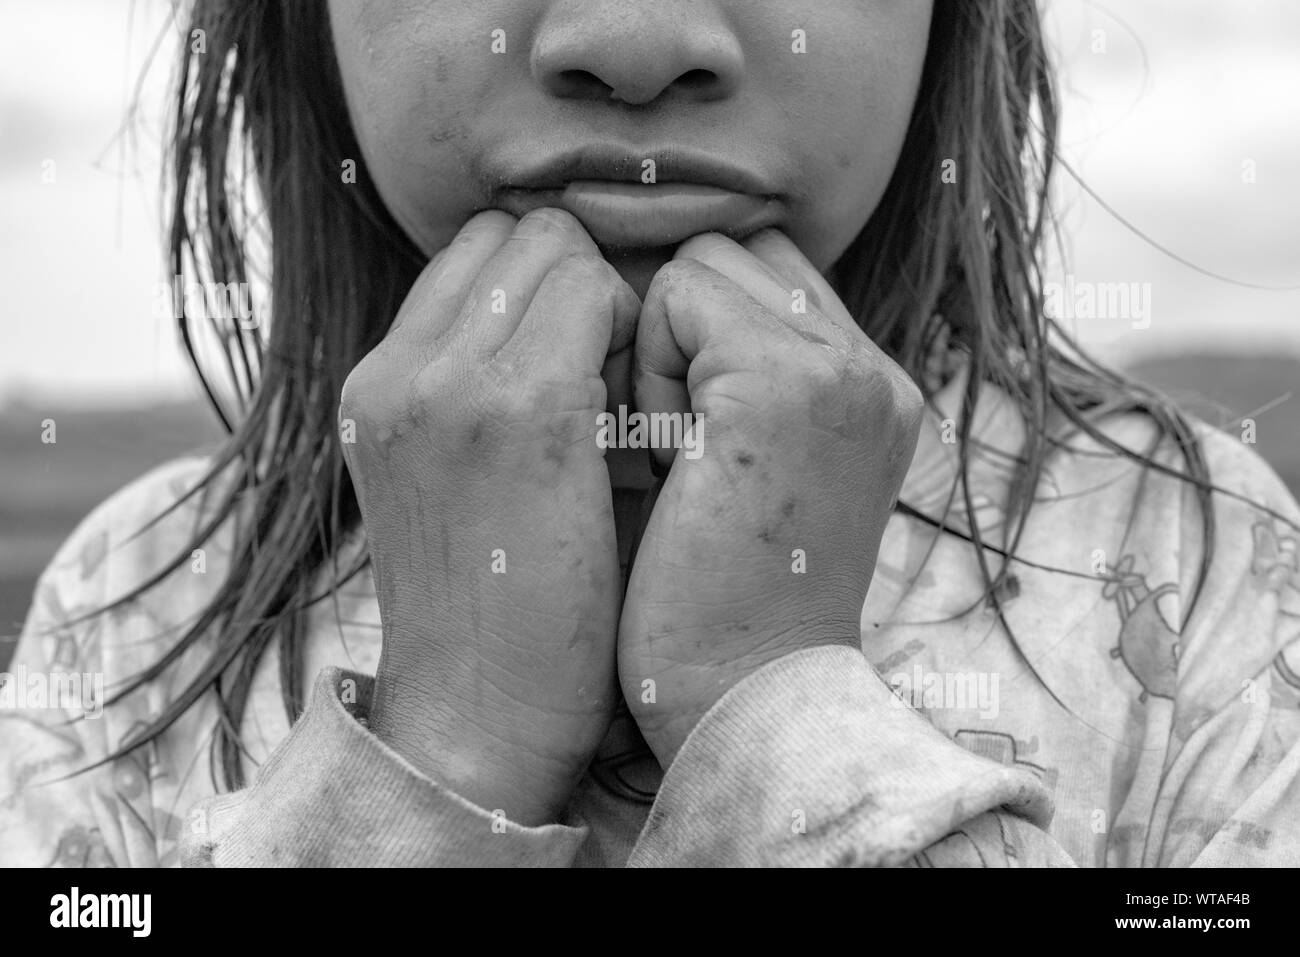 Soutenez la cause indigène Guarani indigènes girl portrait Banque D'Images